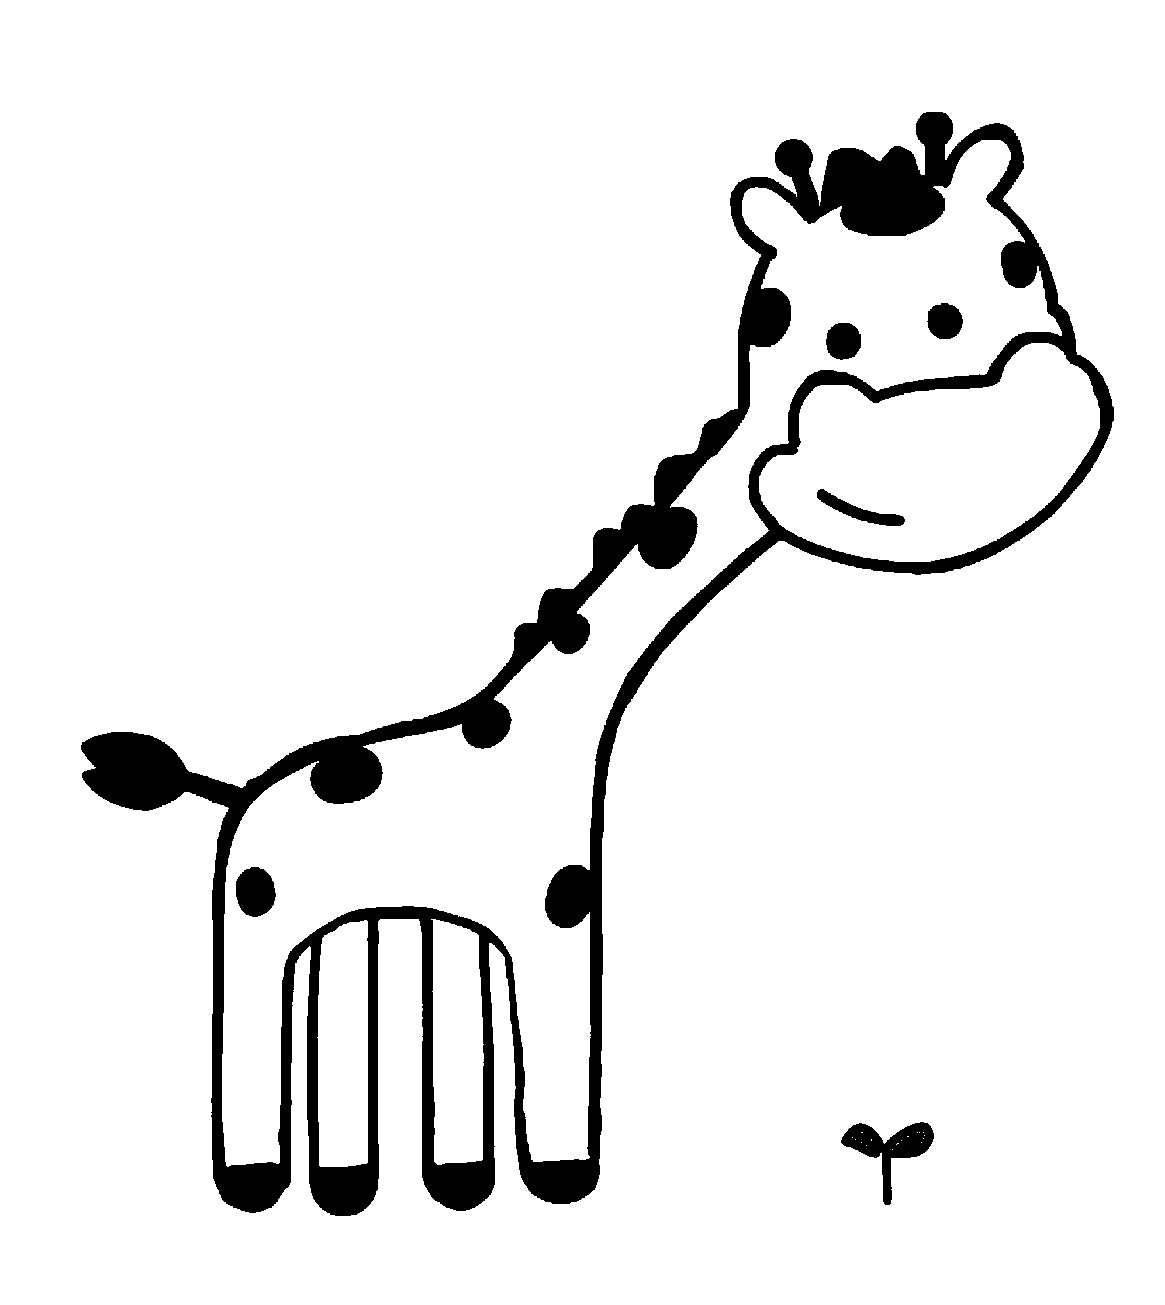 Página para colorear de jirafas para niños